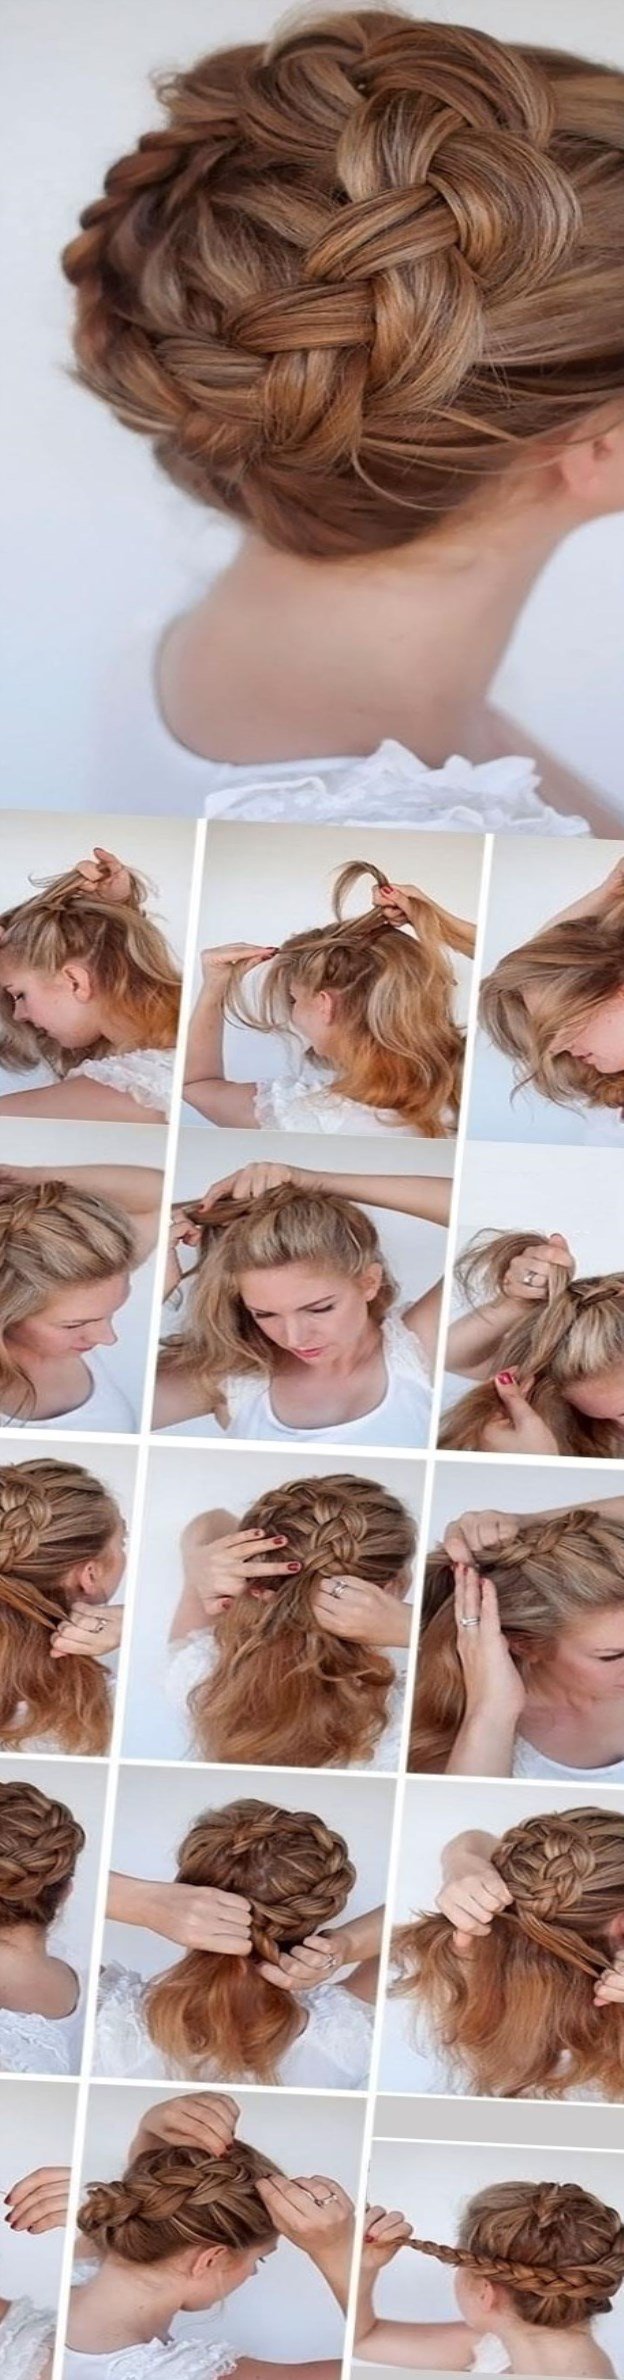 Як заплести волосся середньої довжини самостійно